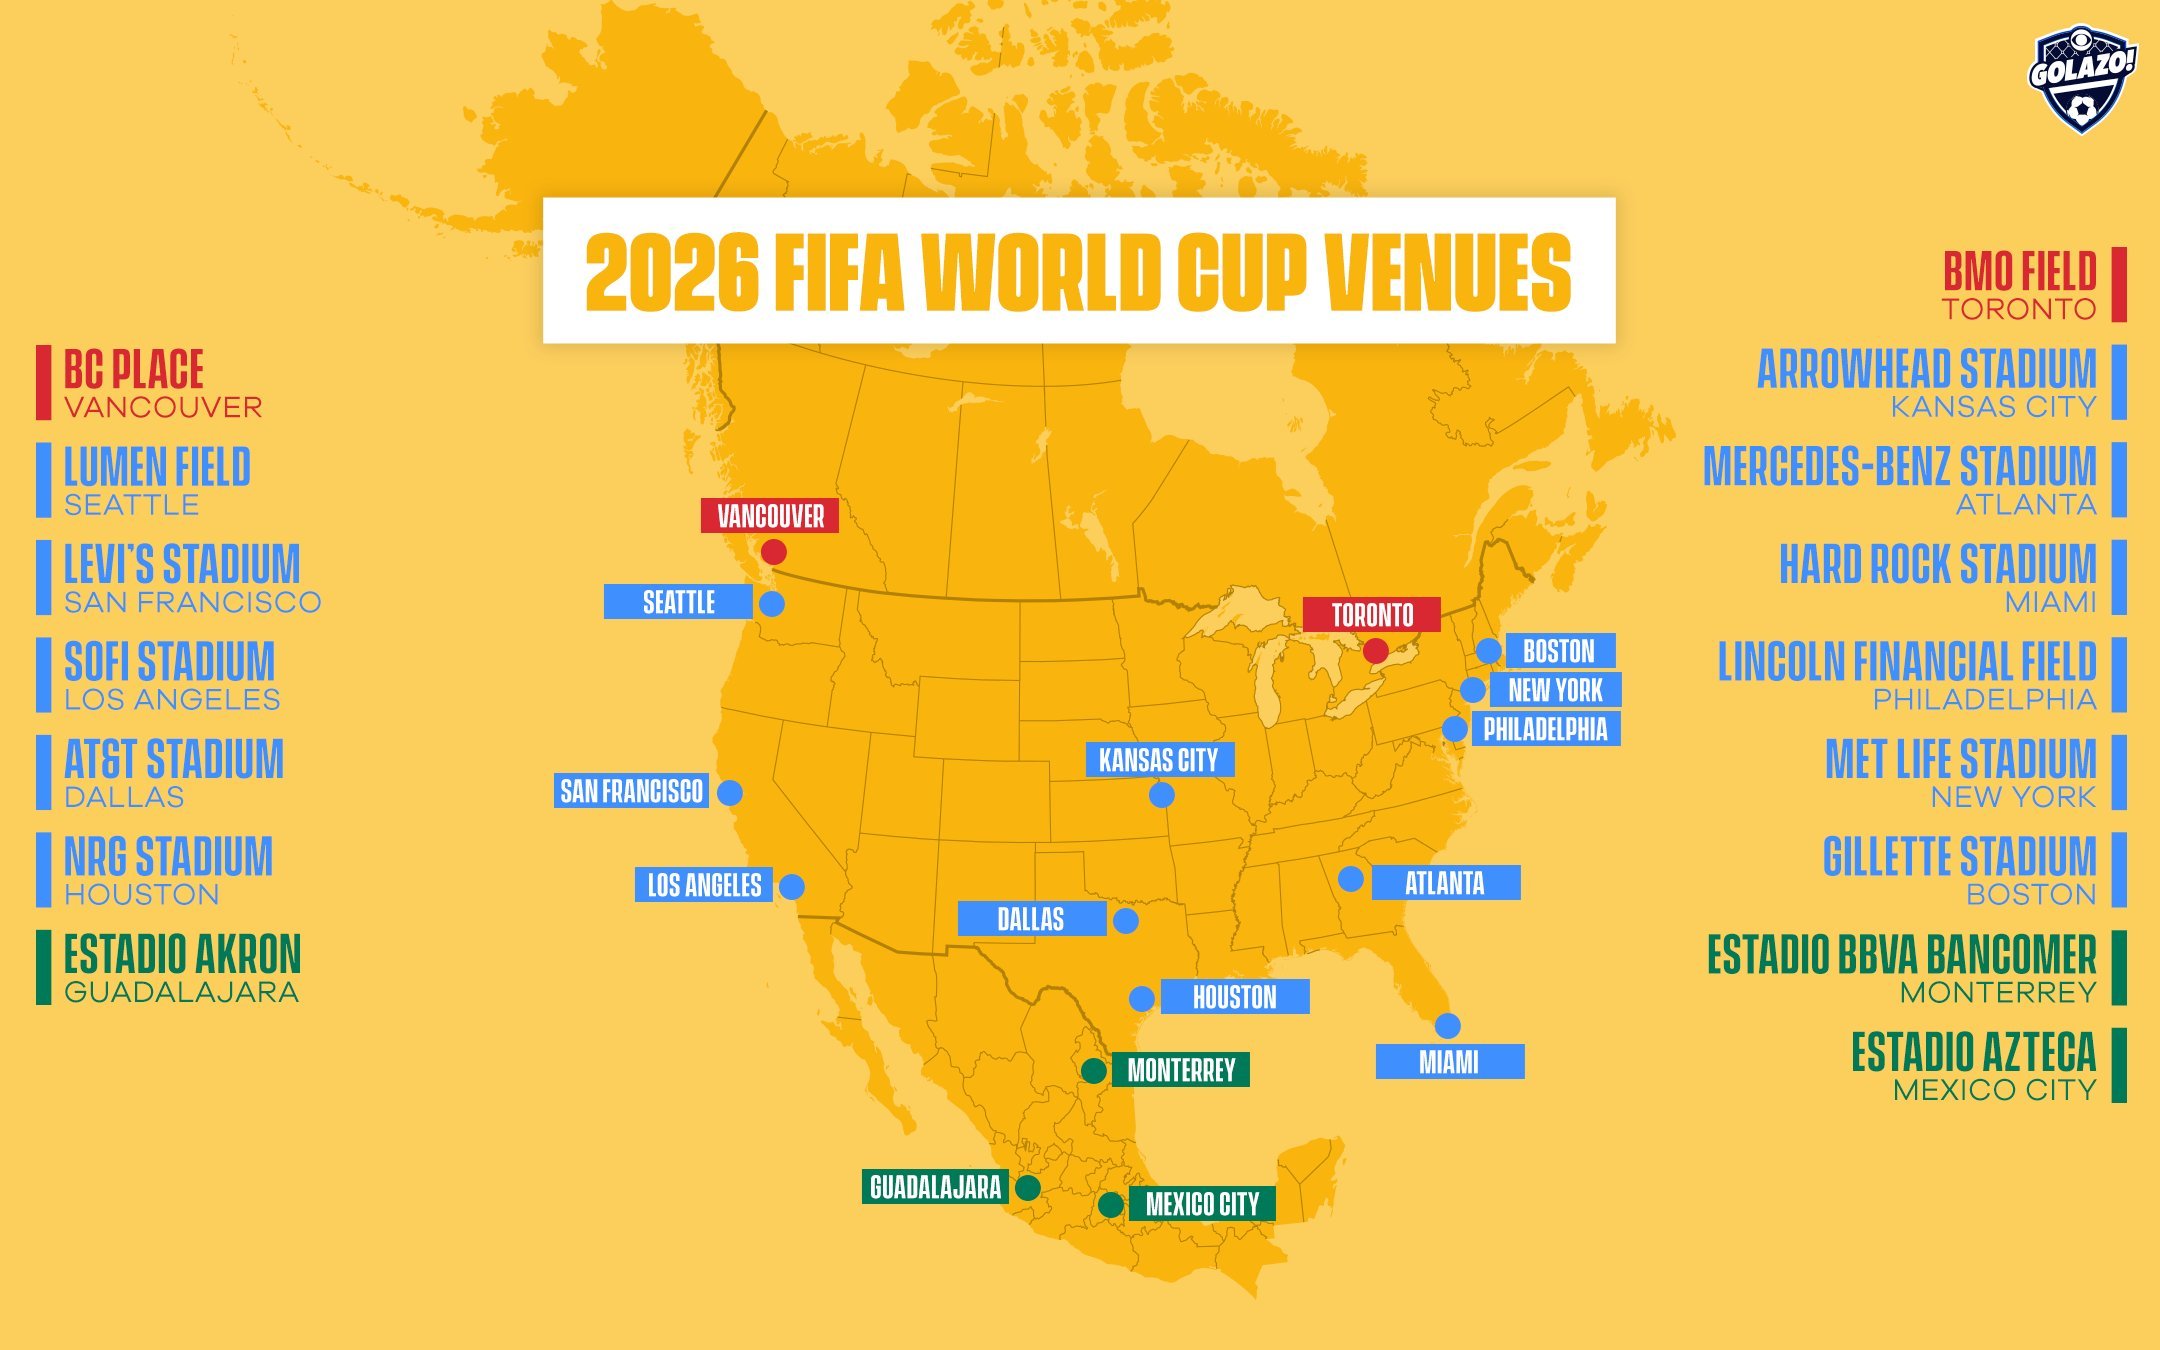 16 JUNE 2022: 2026 FIFA WORLD CUP VENUES - PublicHealthMaps